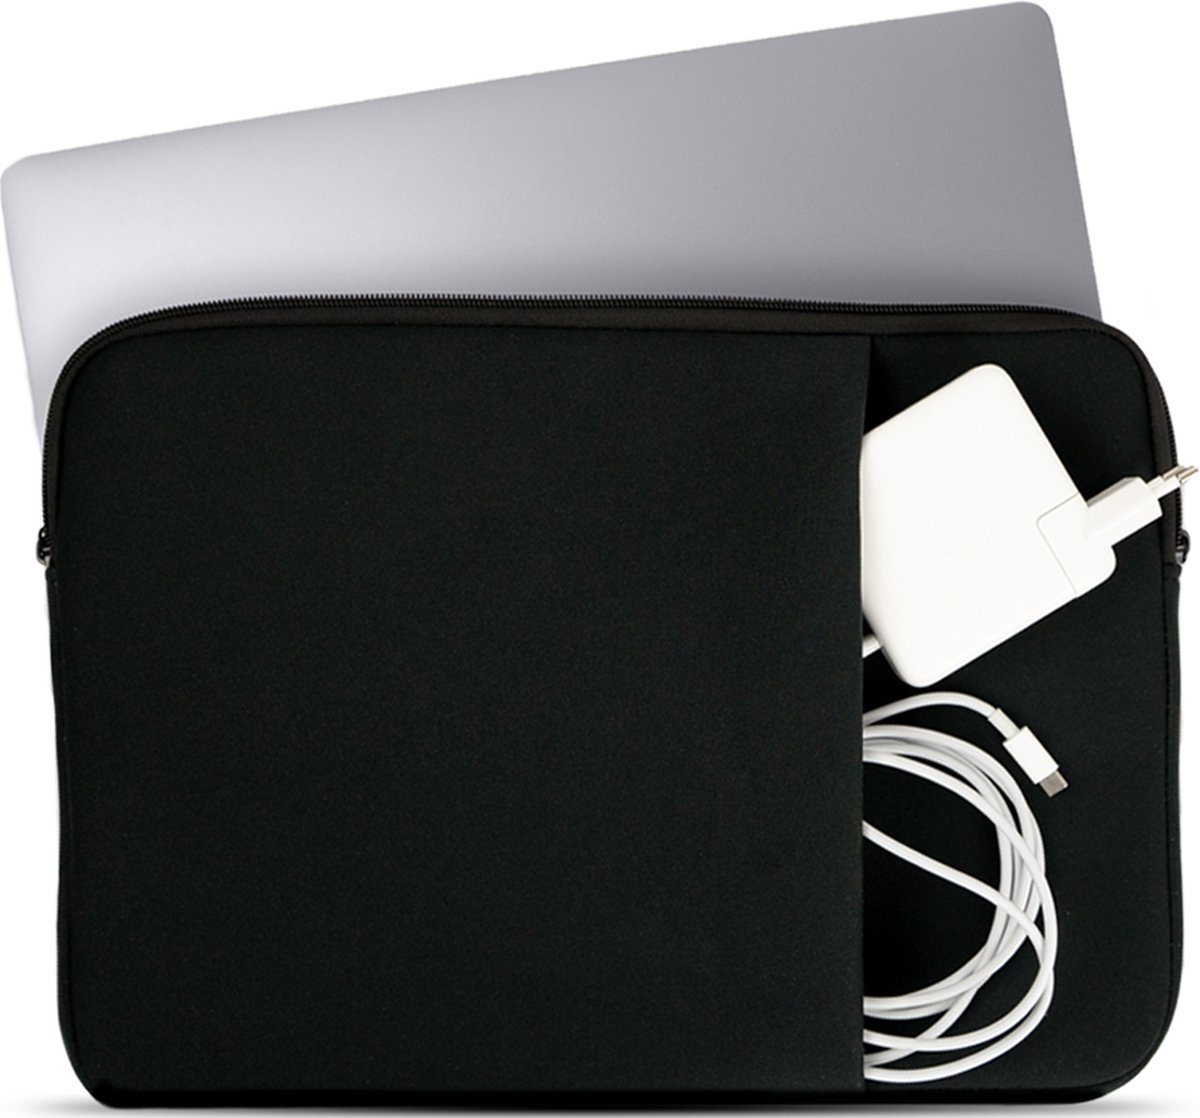 Coverzs Laptophoes 15,6 inch & 17 inch (zwart) - Laptoptas dames / heren geschikt voor o.a. 15,6 inch laptop en 17 Inch laptop - Macbook hoes met ritssluiting - waterafstotende hoes